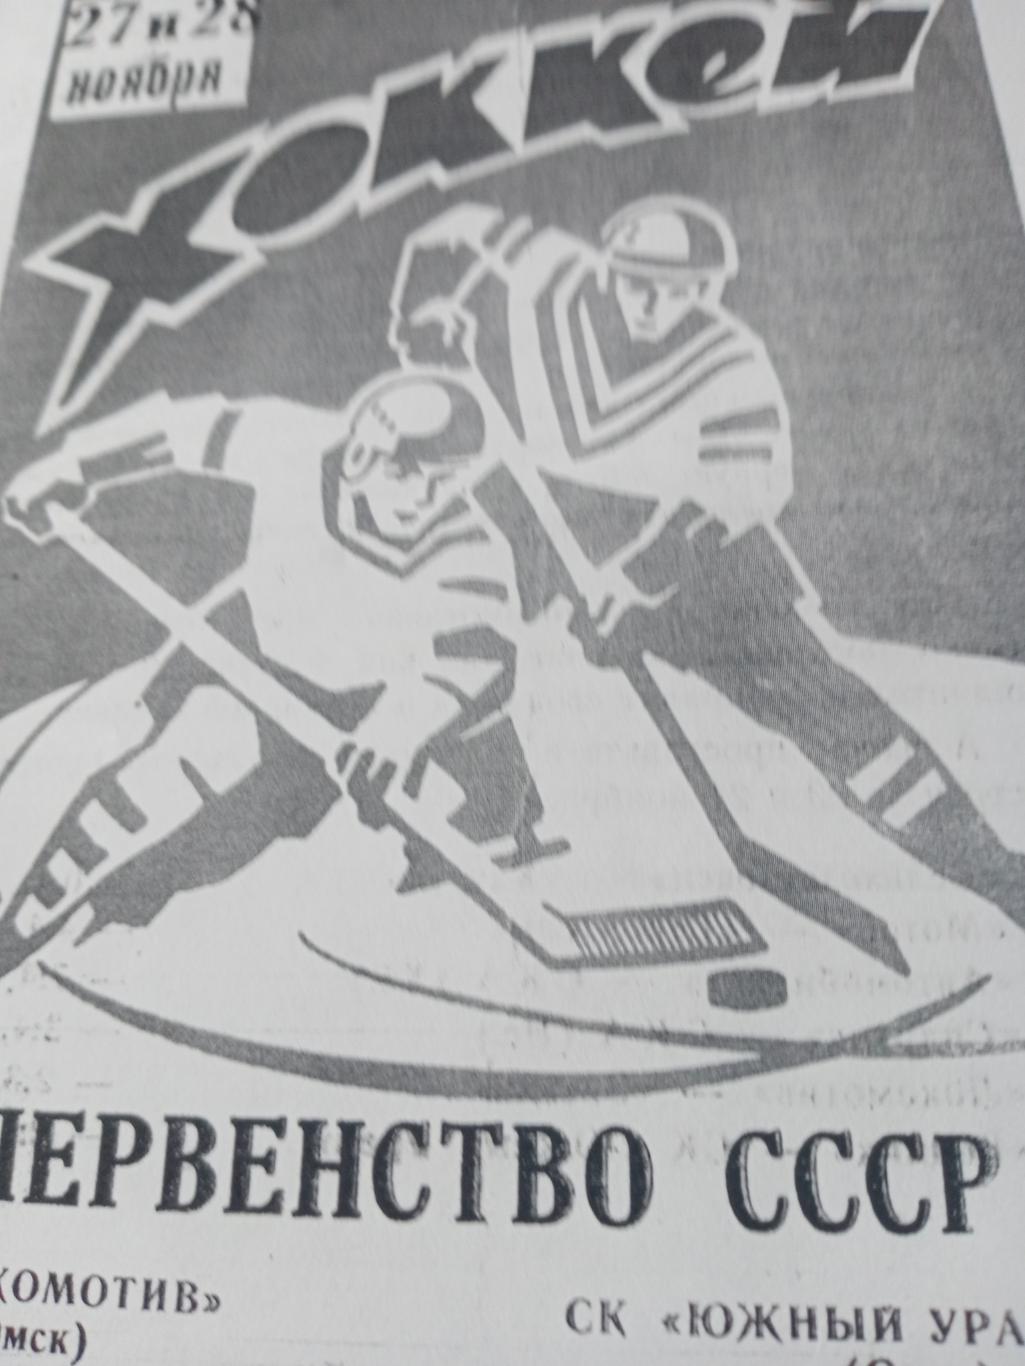 Ксерокс! Локомотив Омск - Южный Урал Орск. 27 и 28 ноября 1971 год